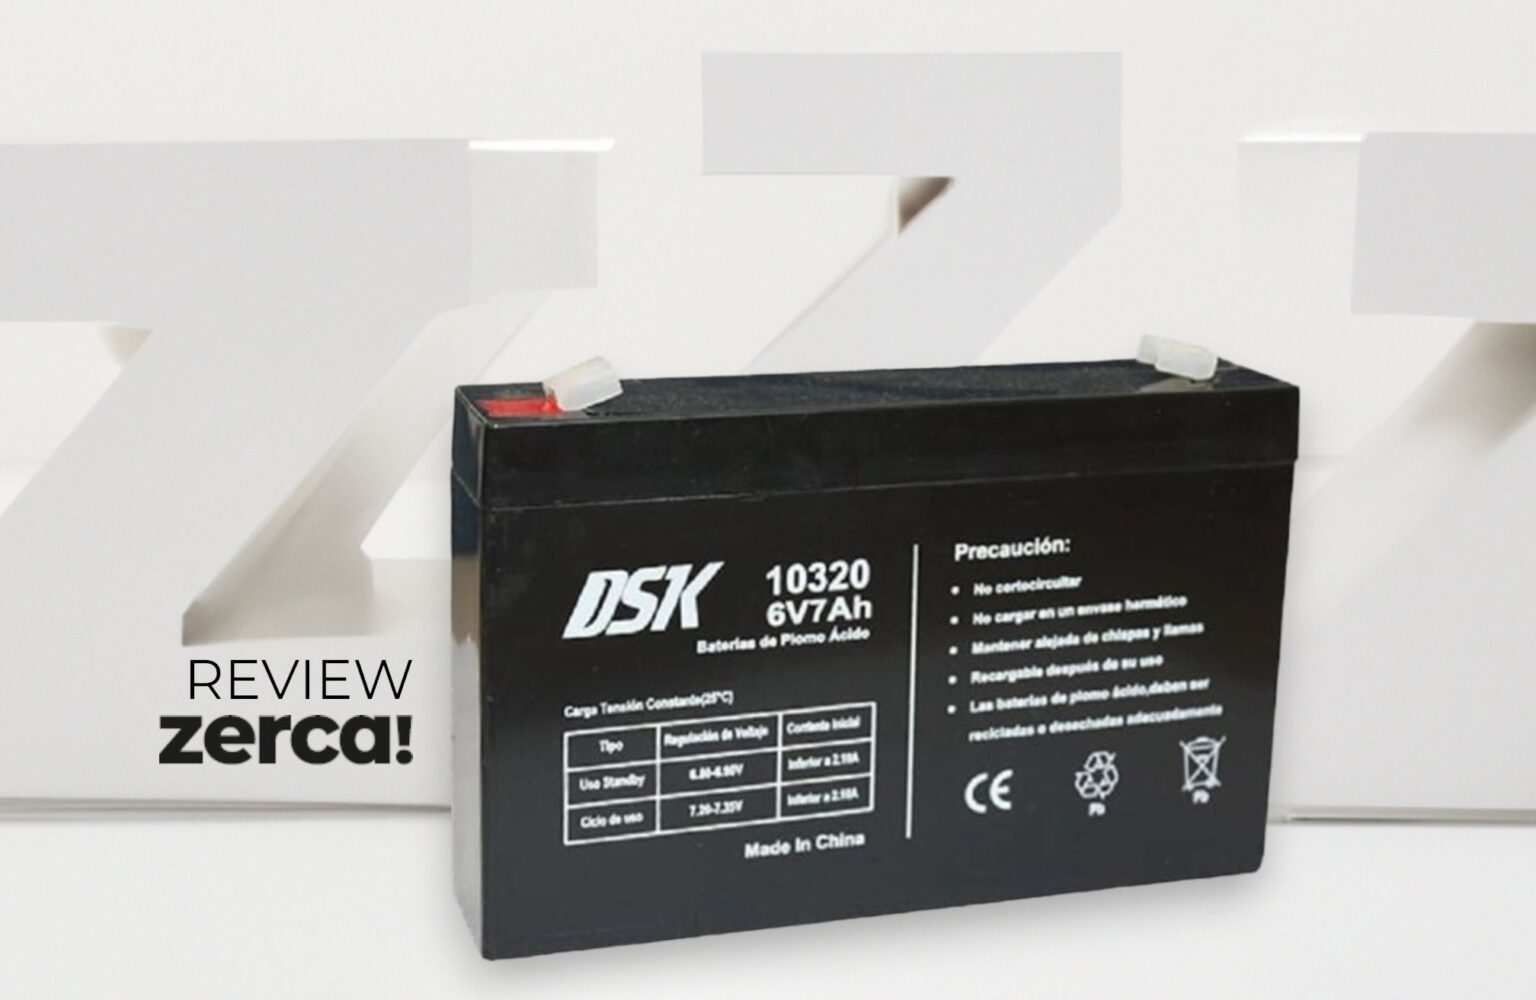 DSK 10320 batería ups Sealed Lead Acid (VRLA) 6V